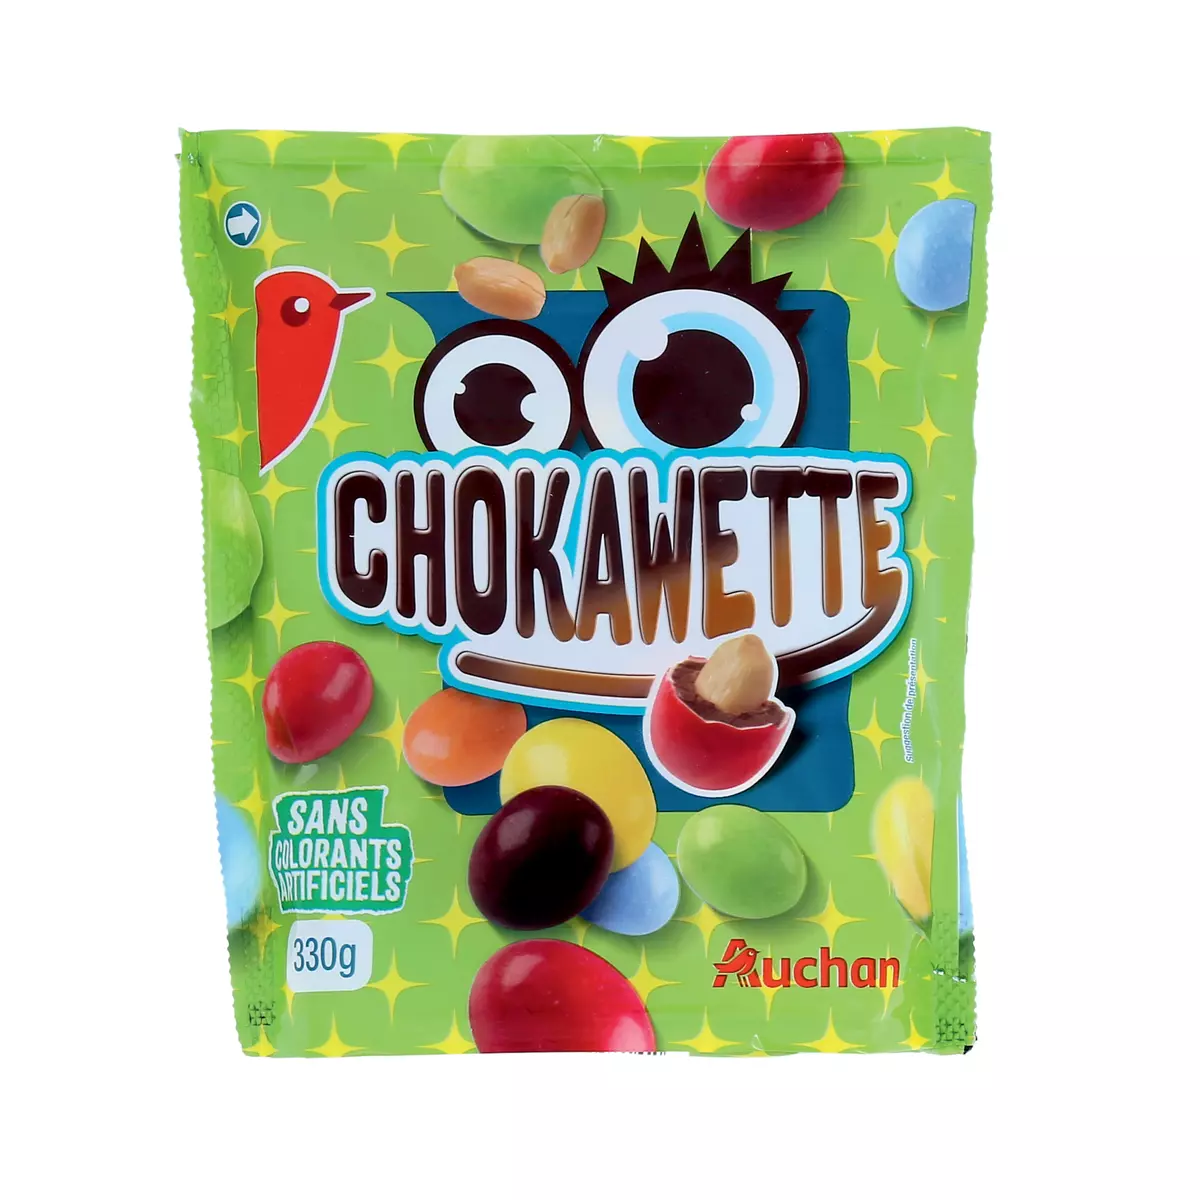 AUCHAN Chokawette bonbons chocolatés à la cacahuète sans colorants  artificiels 330g pas cher 